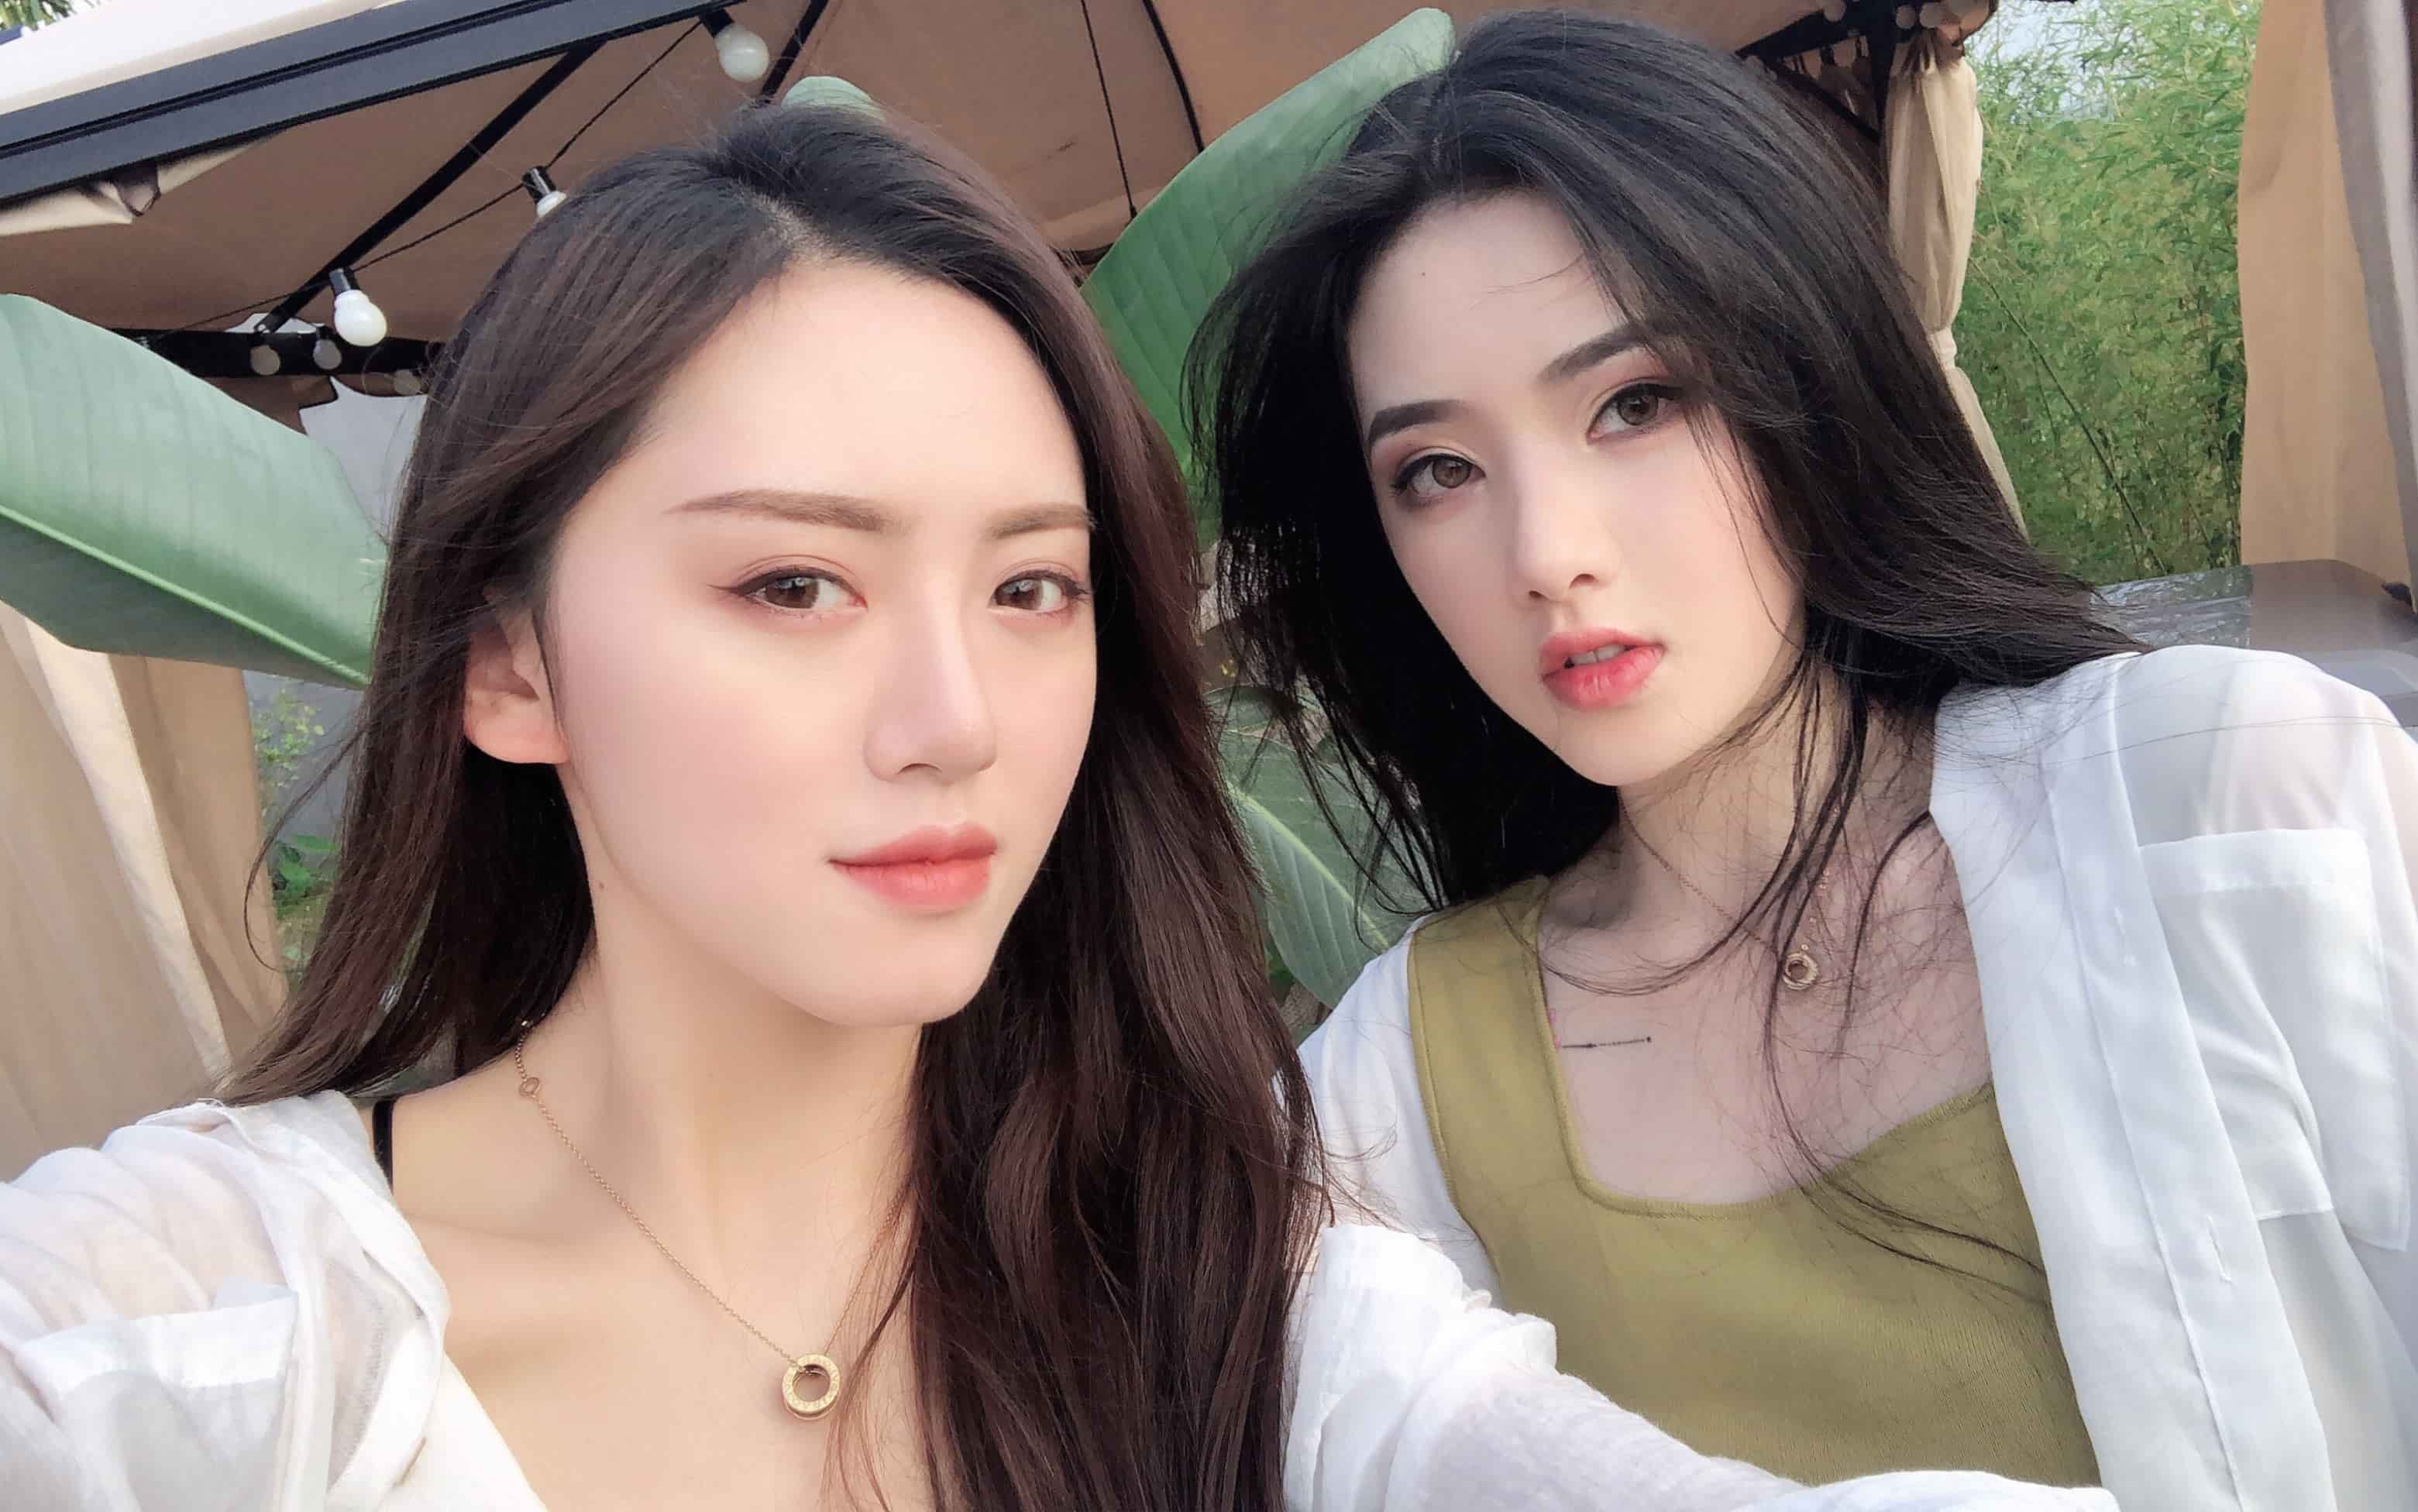 China girls lesbian